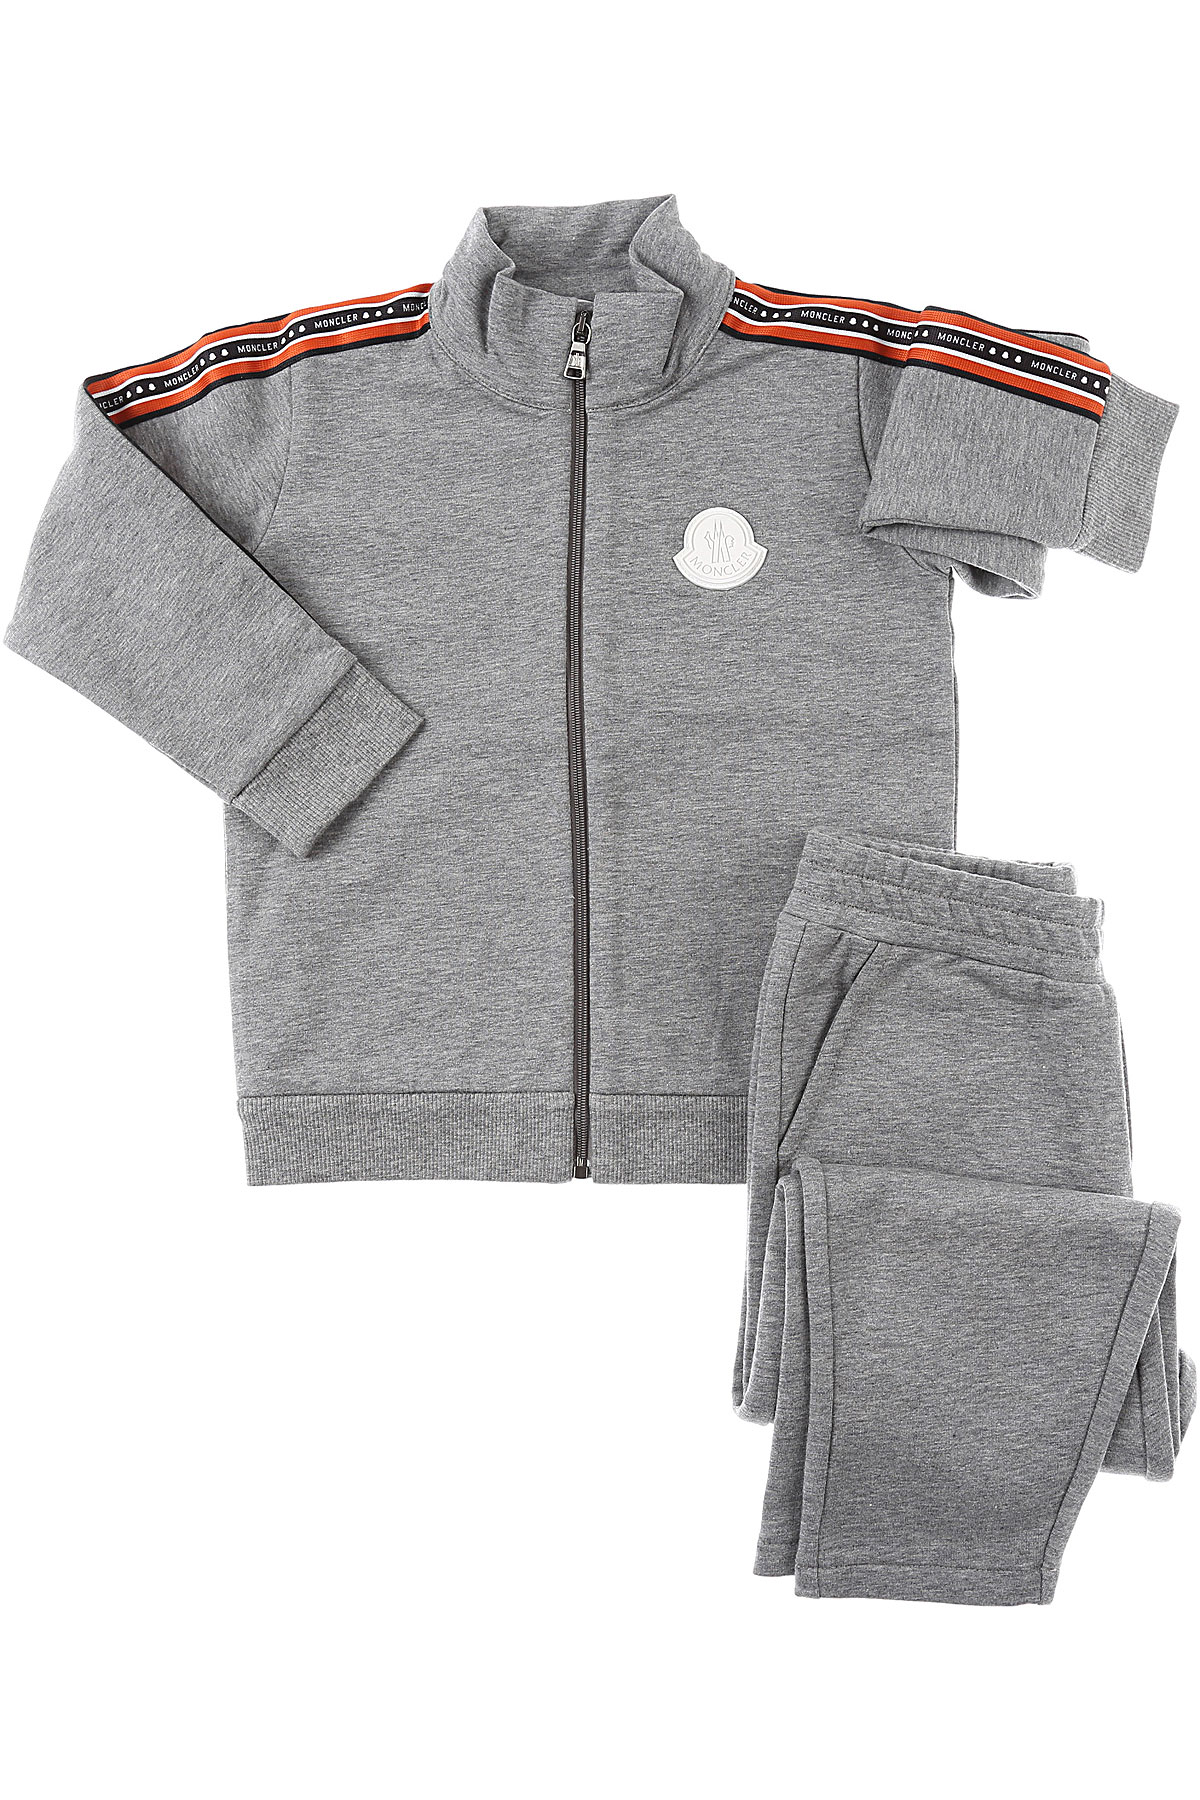 Moncler Baby Sweatshirt & Kapuzenpullover für Jungen Günstig im Sale, Grau, Baumwolle, 2017, 12 M 12 M 24M 2Y 3Y